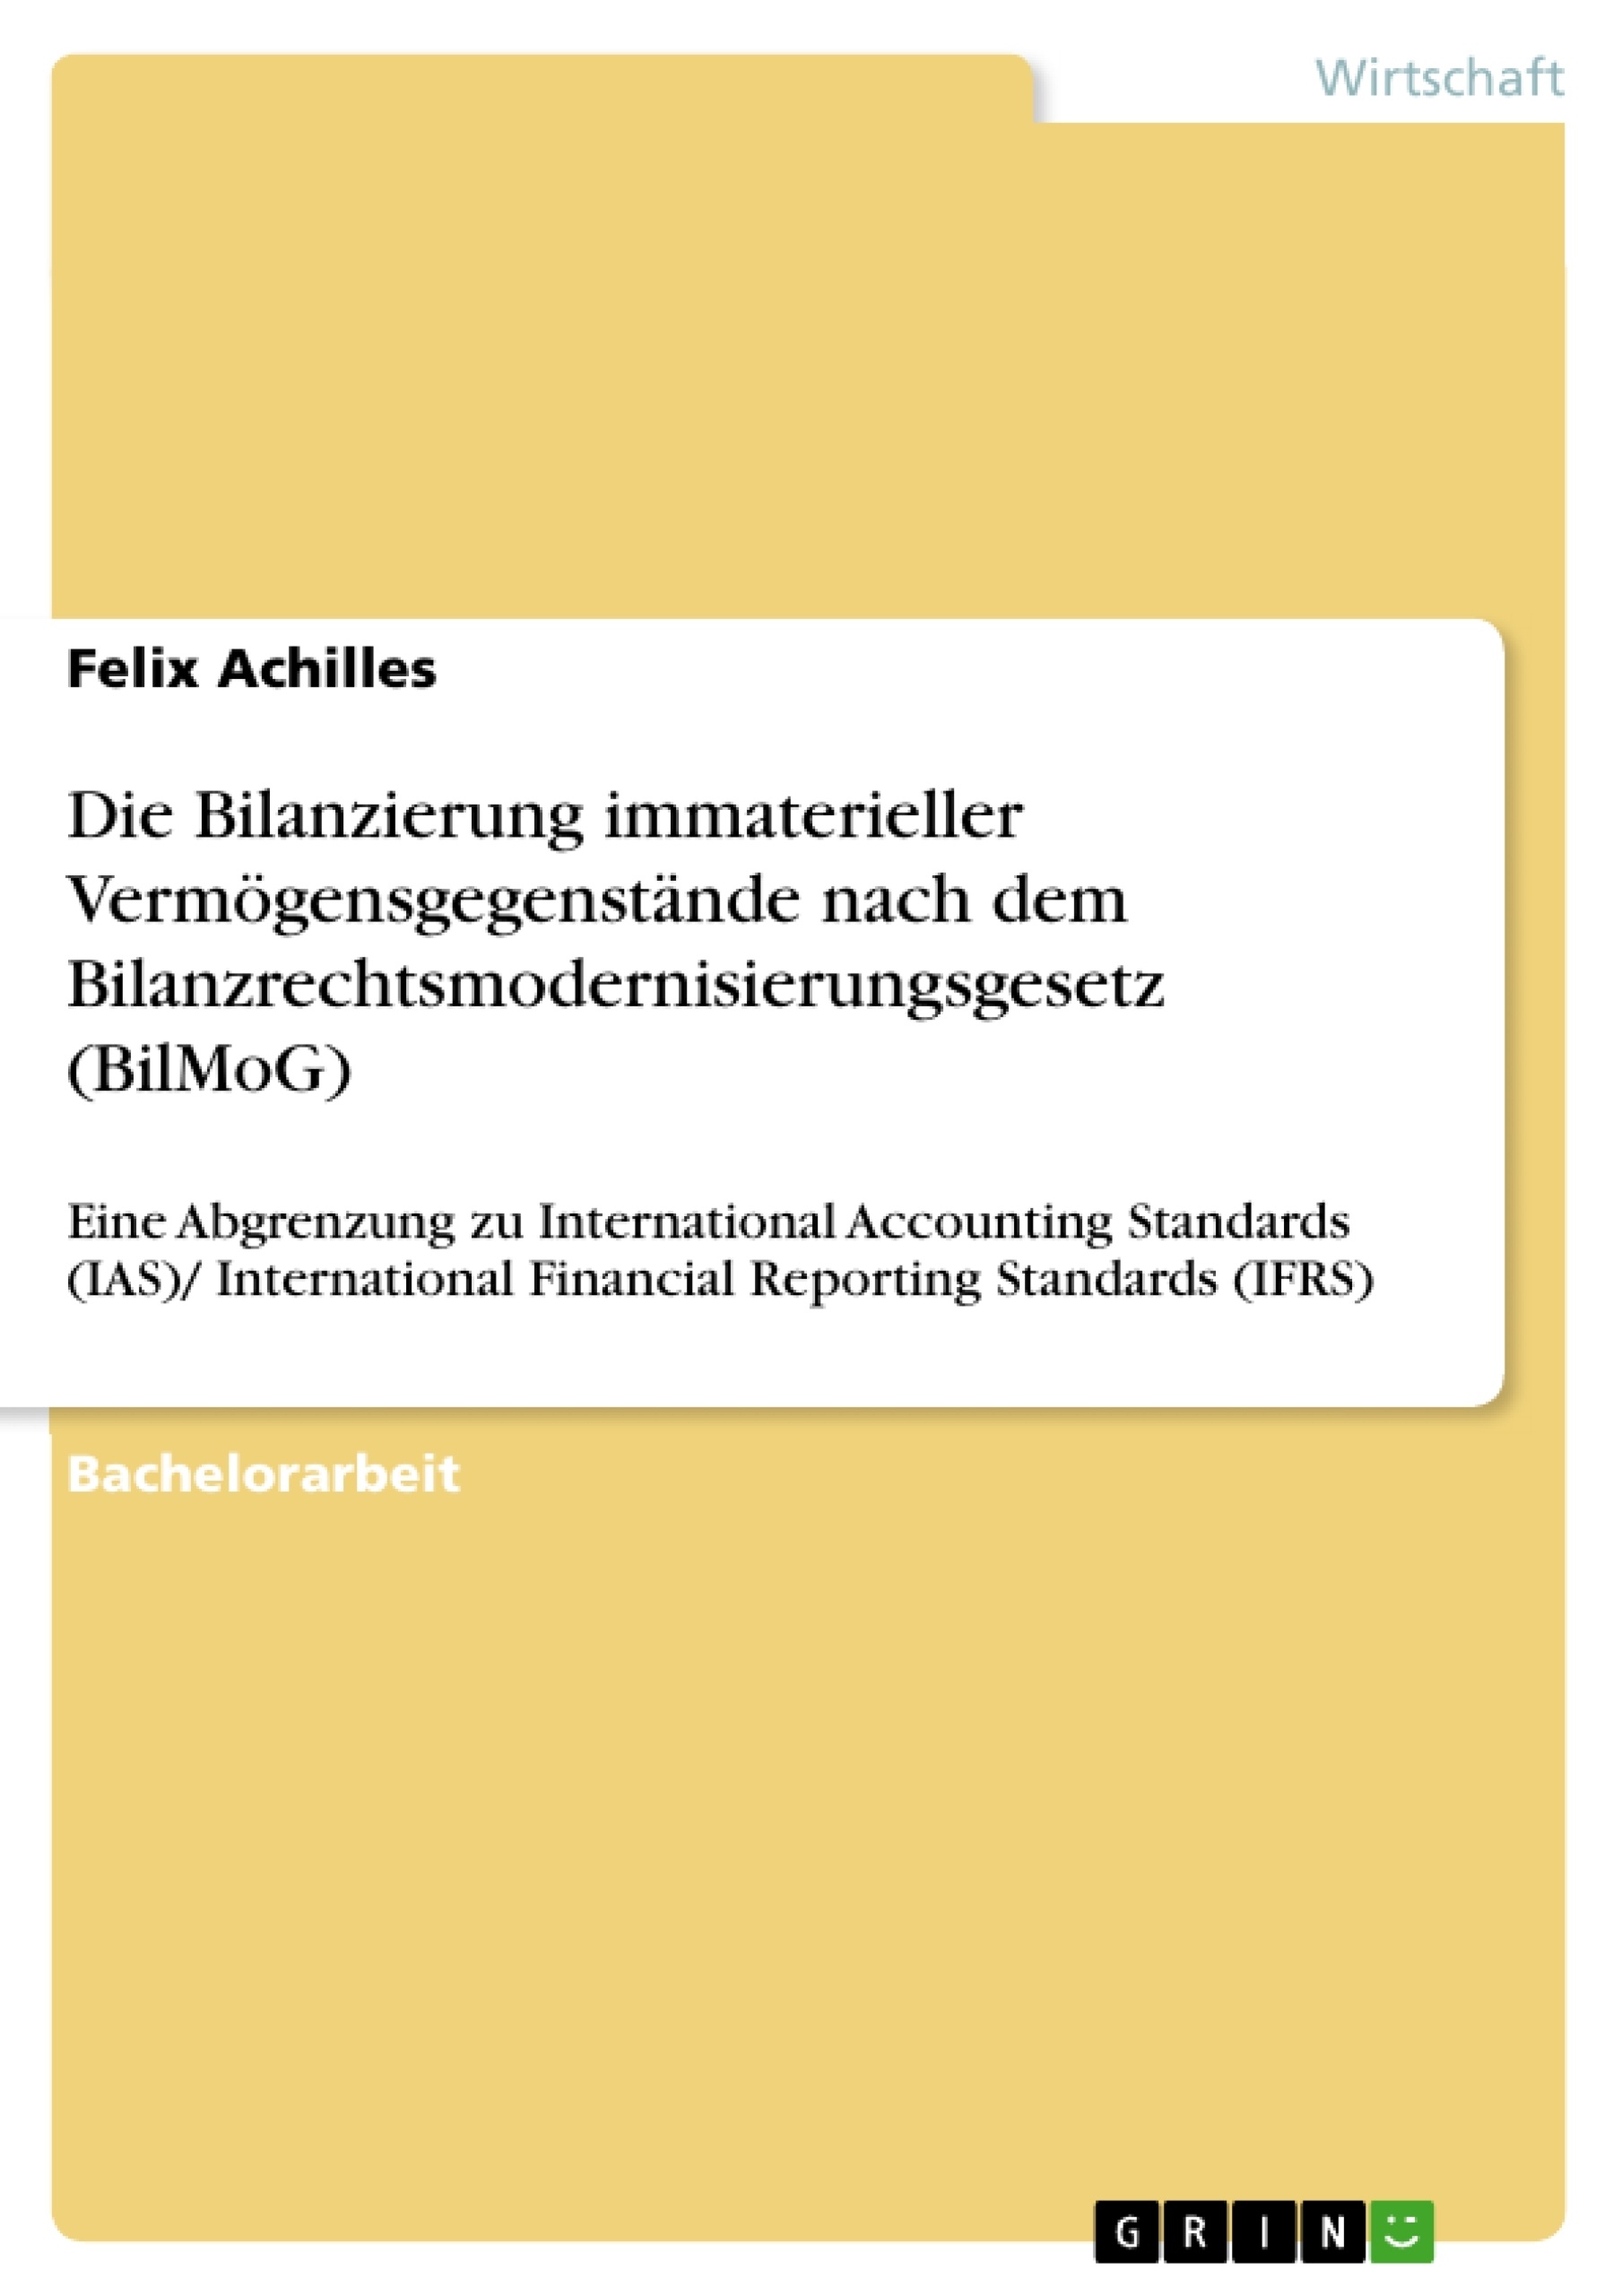 Titre: Die Bilanzierung immaterieller Vermögensgegenstände nach dem Bilanzrechtsmodernisierungsgesetz (BilMoG)